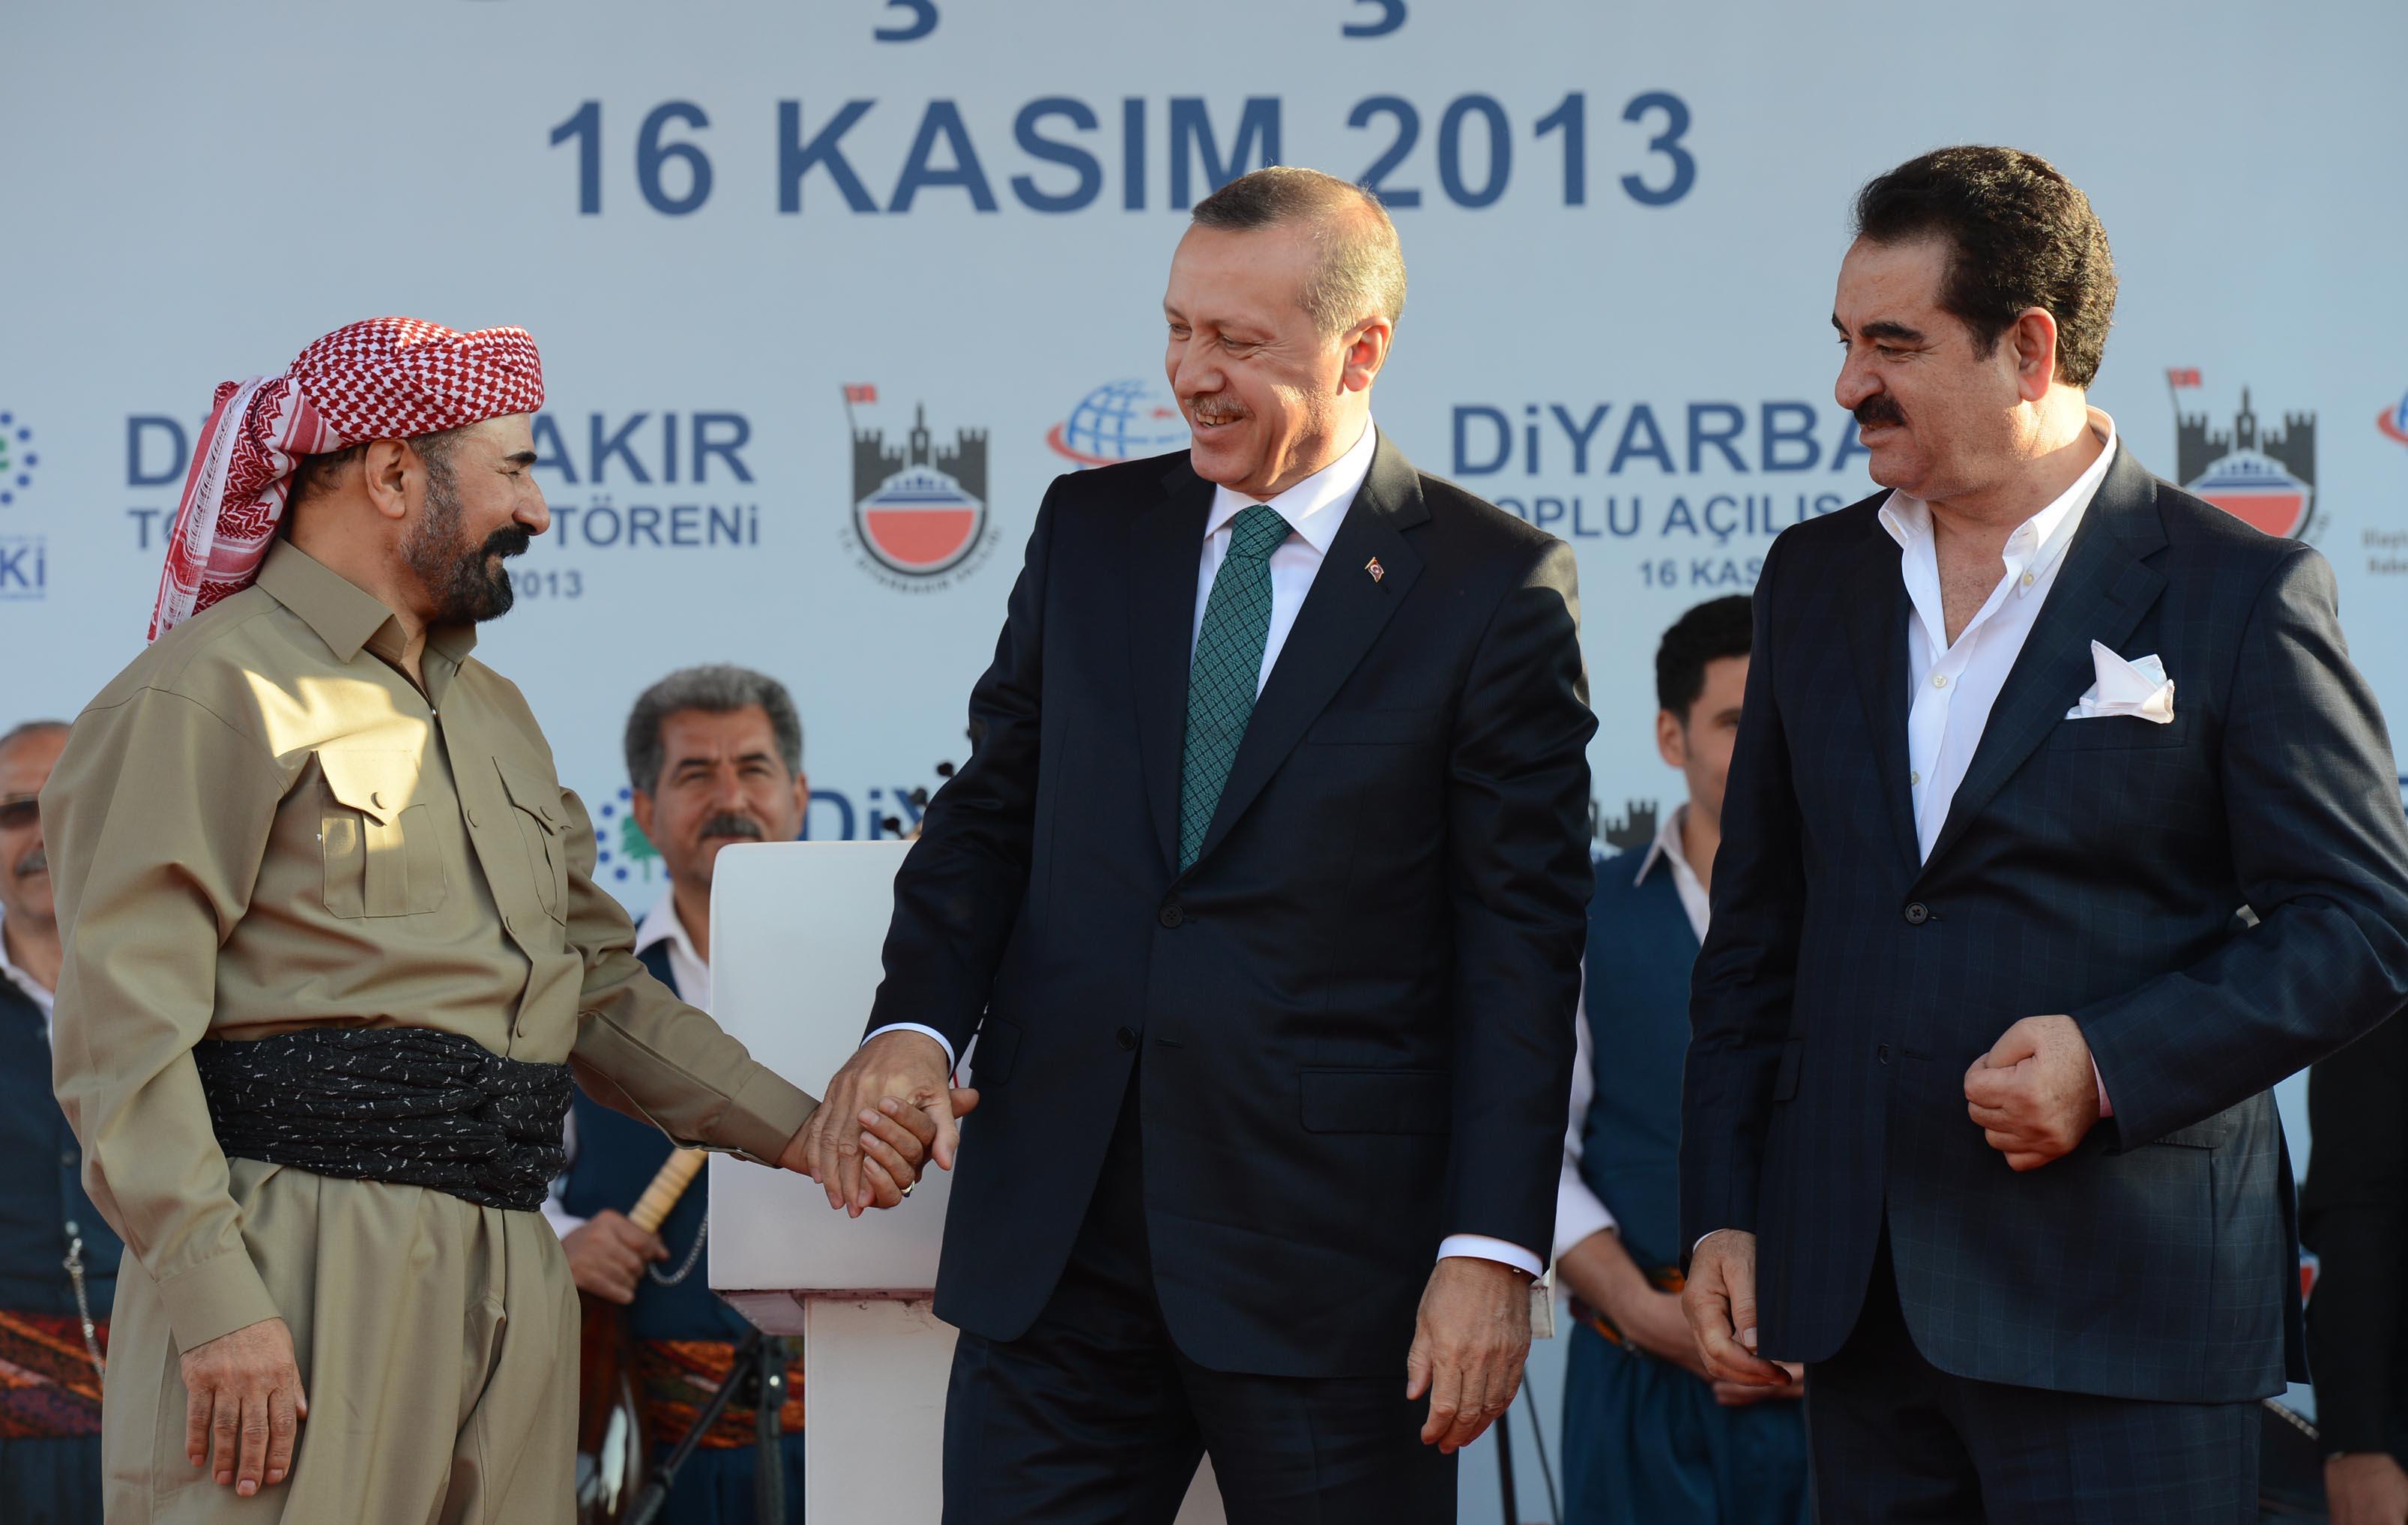 Şivan Perwer e Erdoğan ile el ele verdiği pozlar soruldu